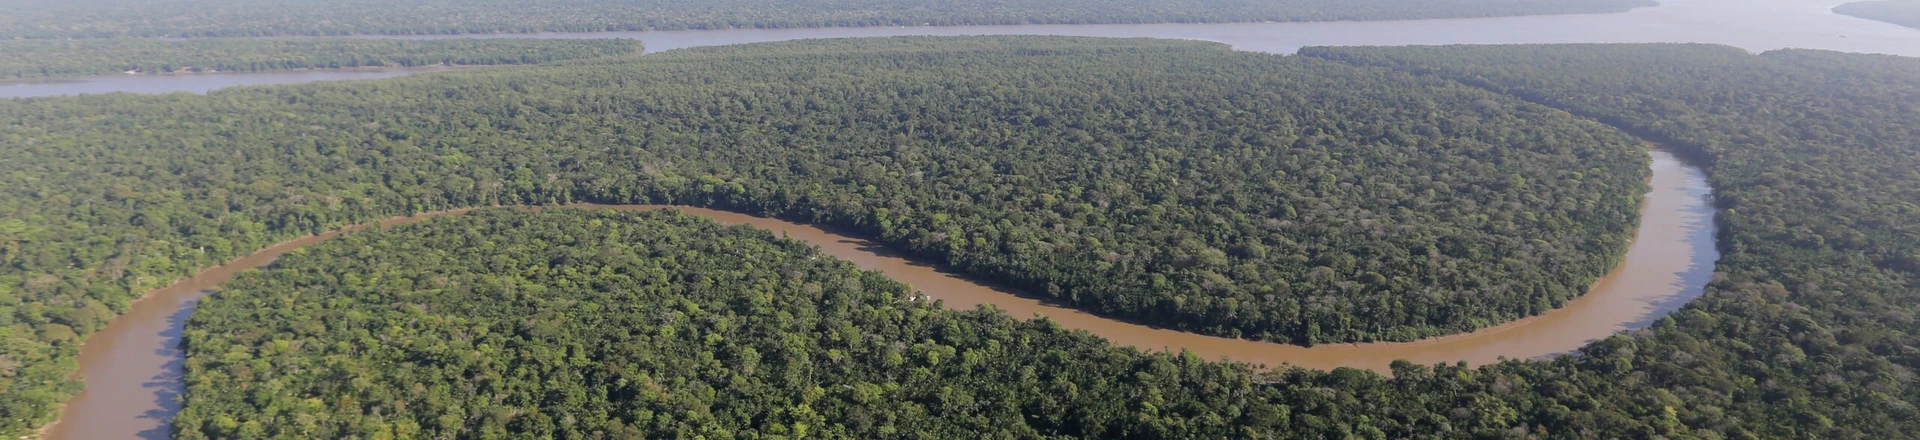 Dados divulgados nesta terça-feira (17) pelo Ministério do Meio Ambiente (MMA), apontam que o desmatamento na Floresta Amazônica (foto) apresentou uma estimativa de queda de 16% entre agosto de 2016 e julho deste ano. FOTO: SIDNEY OLIVEIRA /AG. PARÁDATA: 18.10.2017